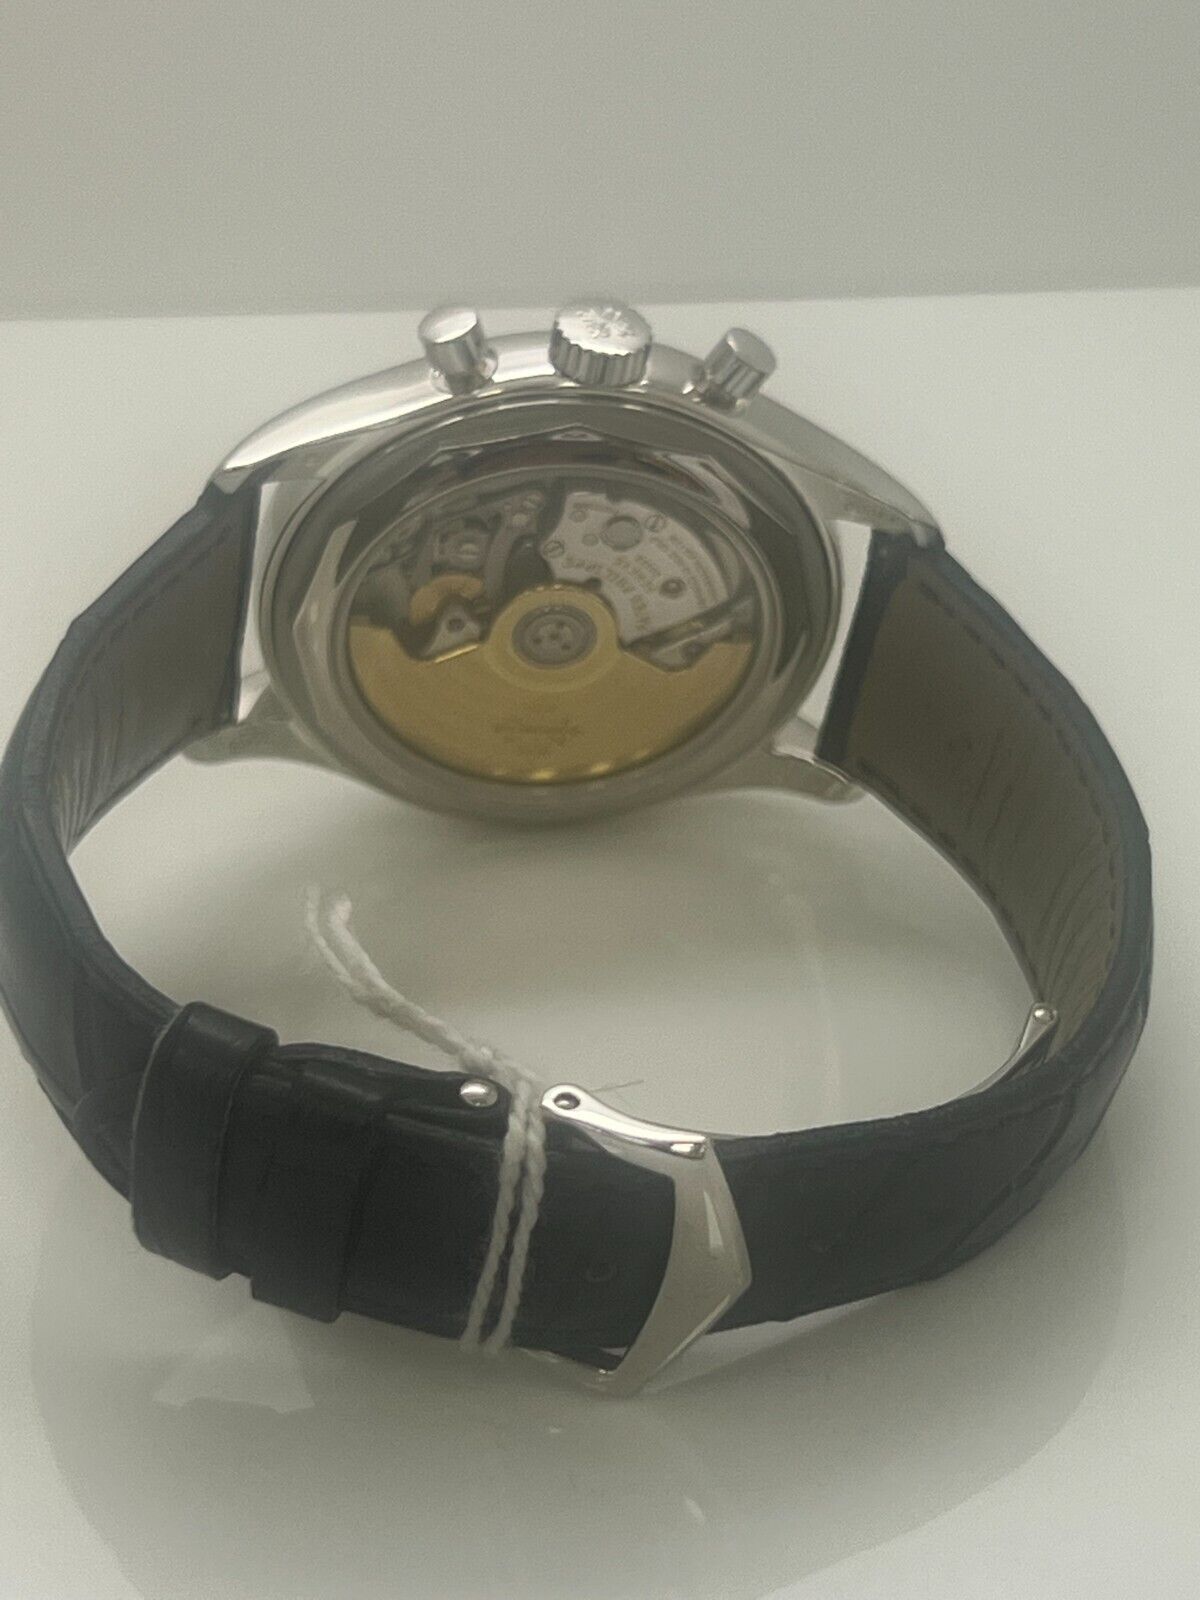 Patek philippe 5960 Platinum Men's 40mm Watch